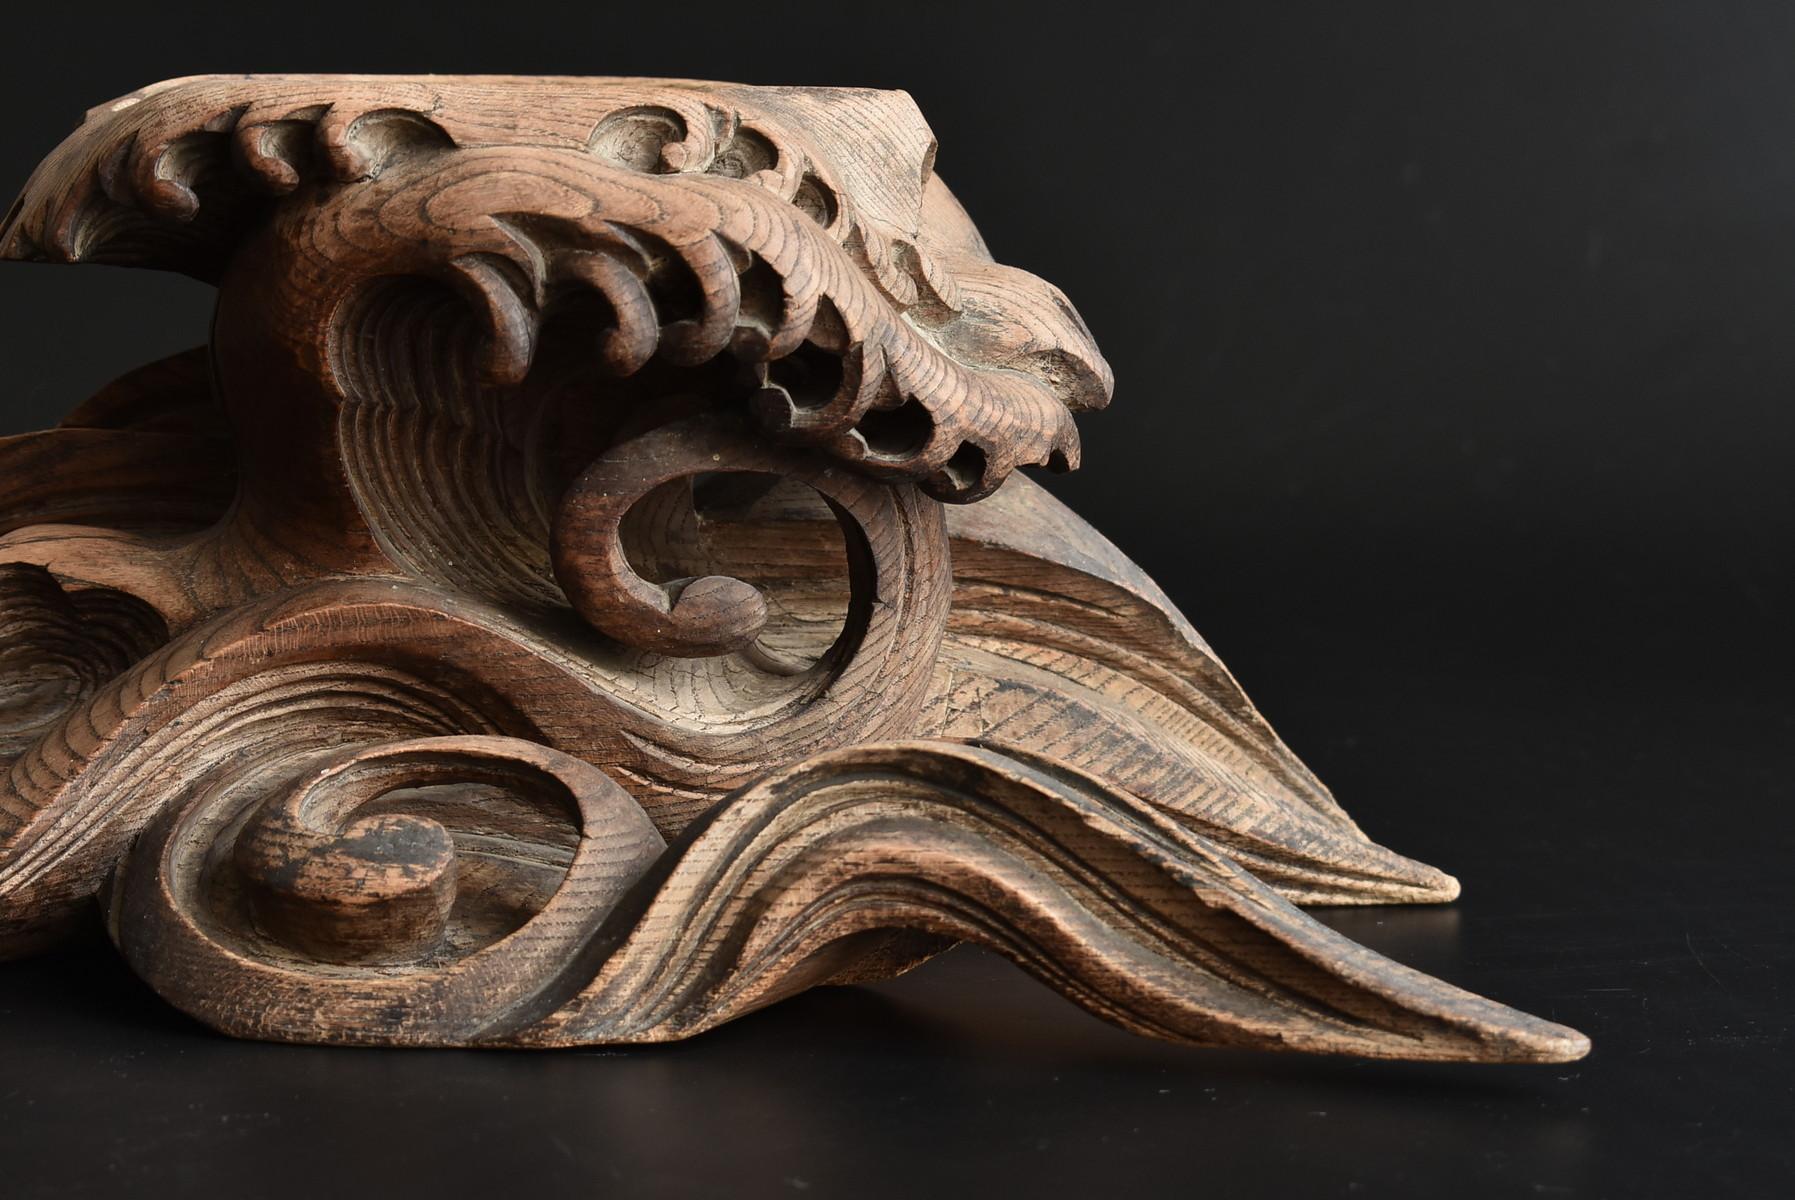 Meiji Japanese Antique Wood Carving Wavy Figurine / Incense Burner / Decoration Stand